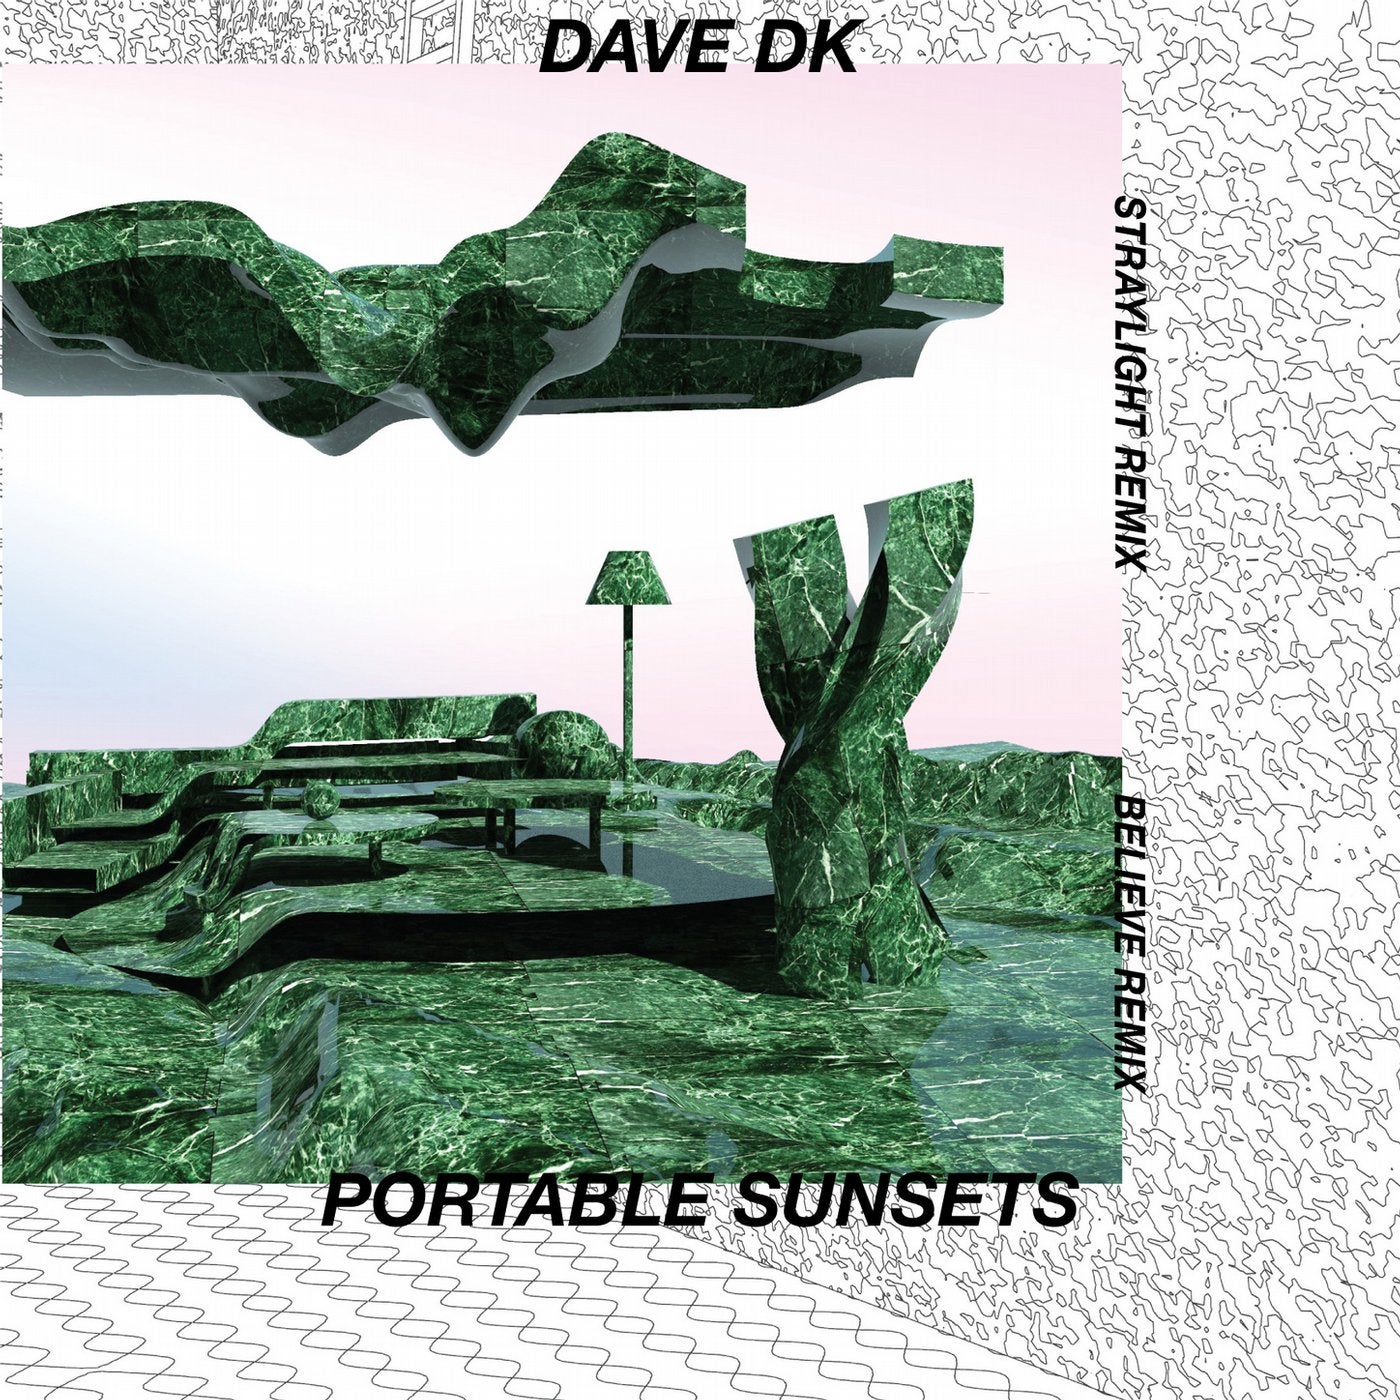 Dave DK Remixes